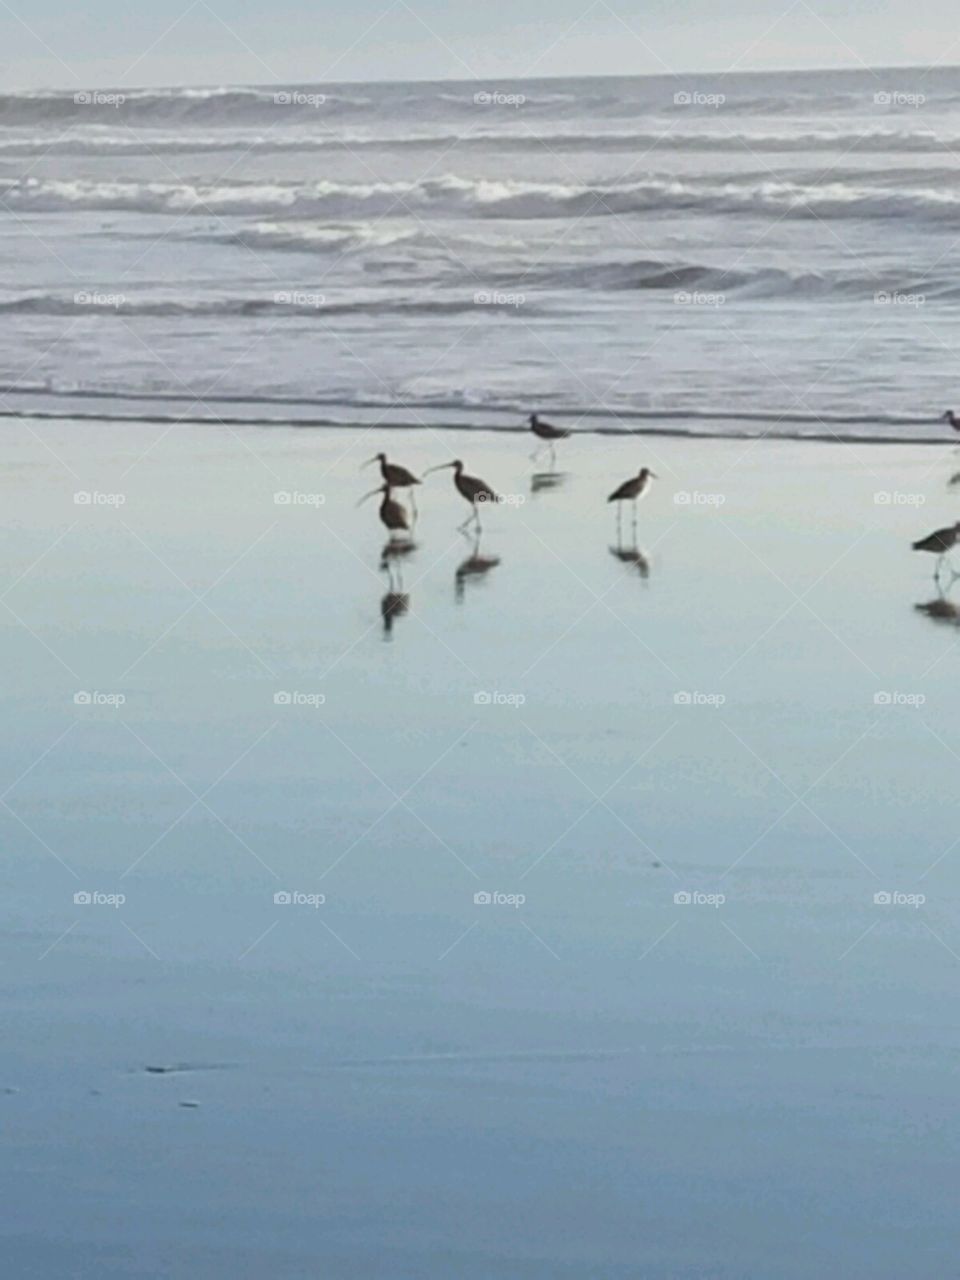 sea birds